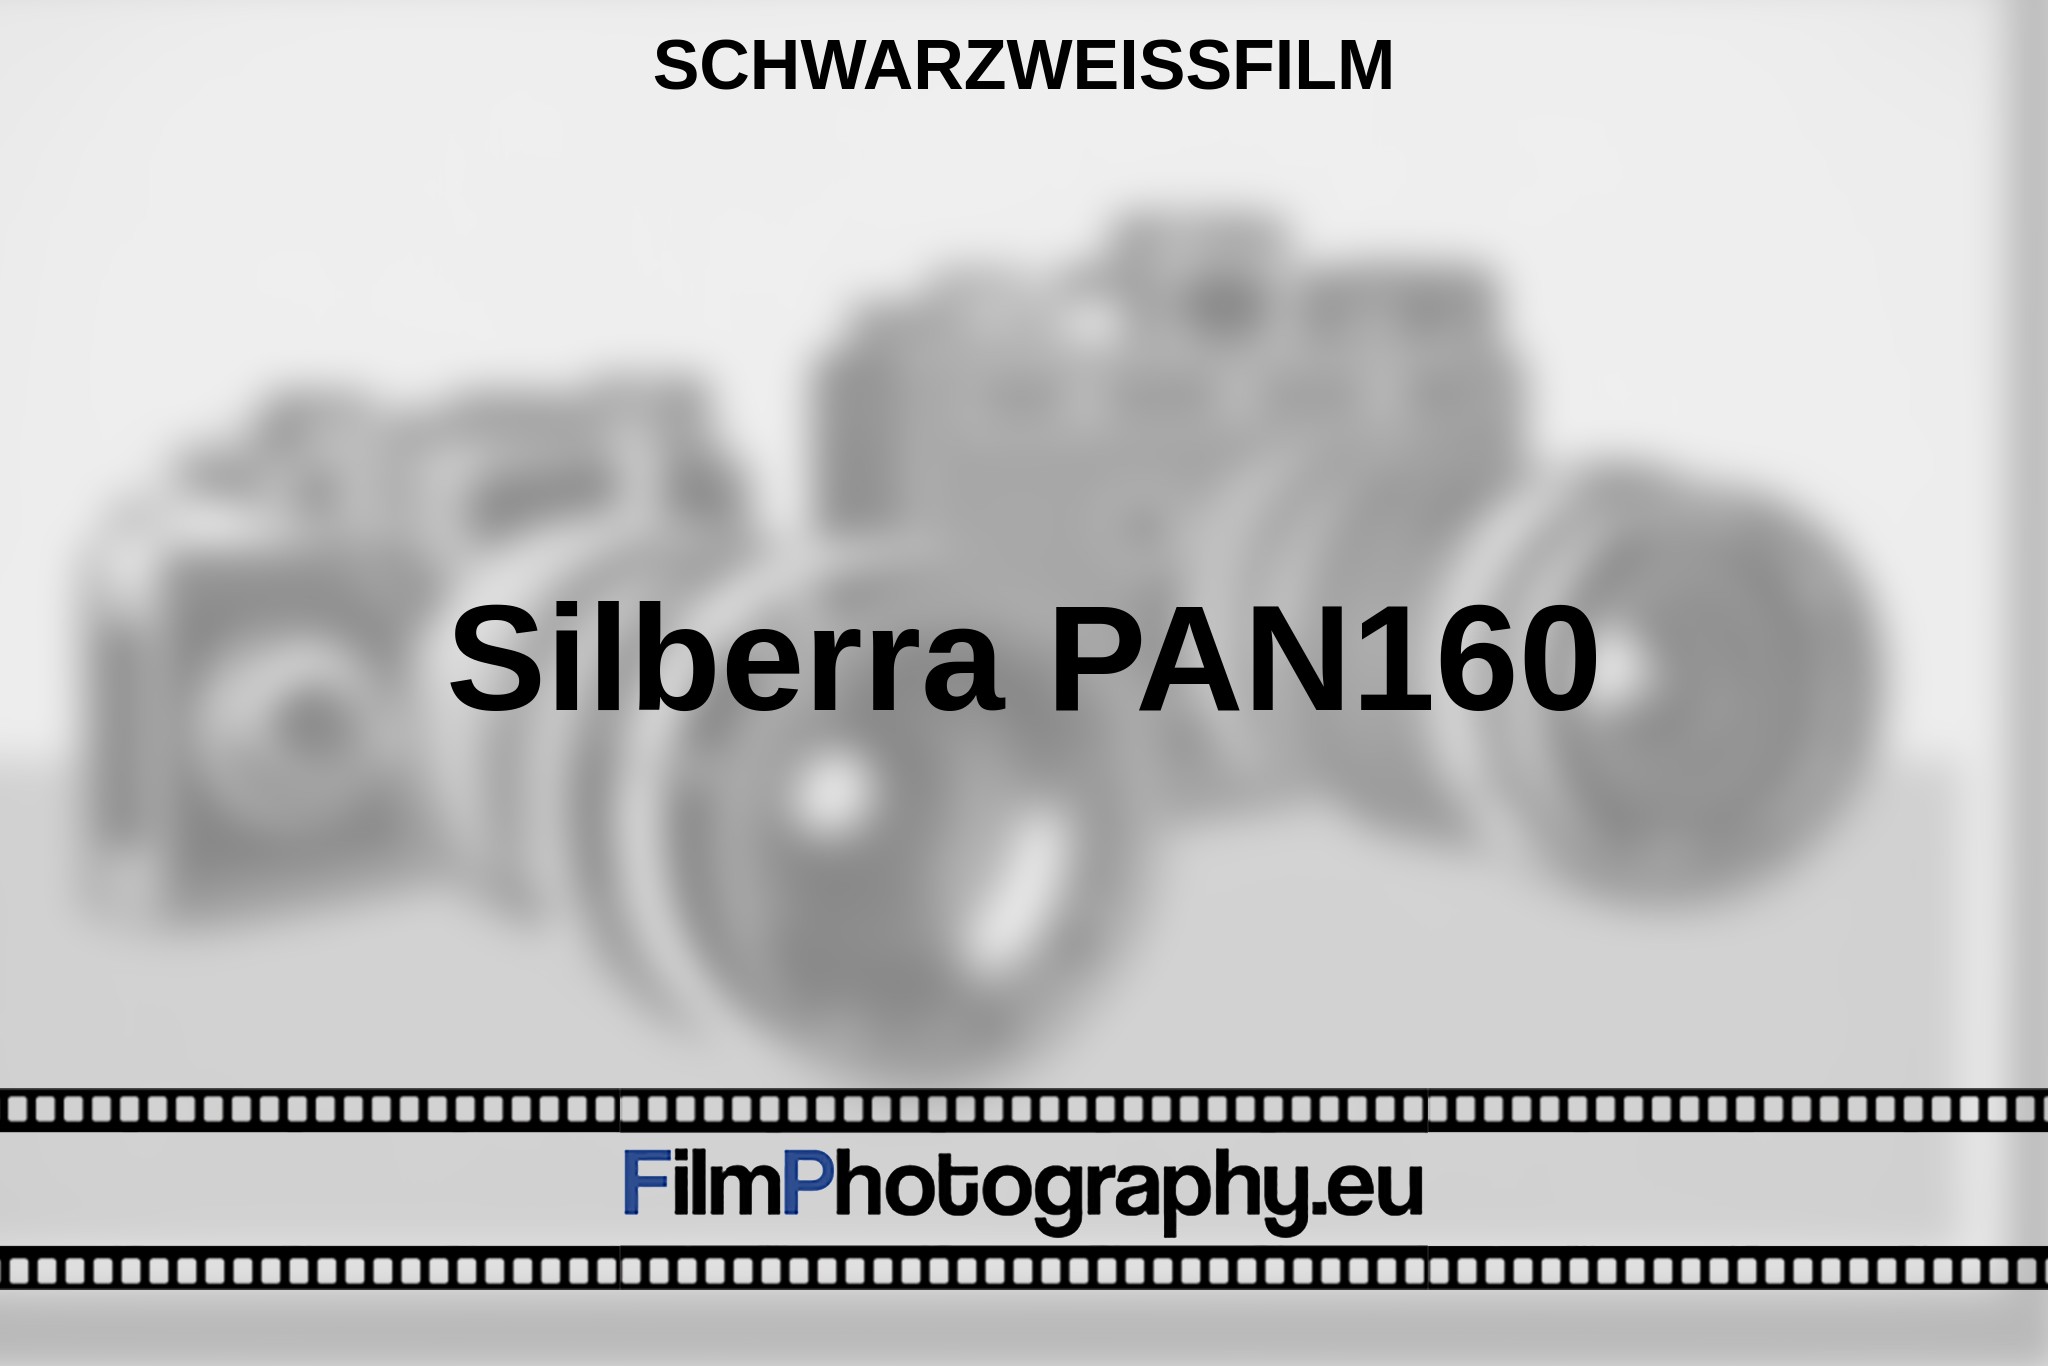 silberra-pan160-schwarzweißfilm-bnv.jpg